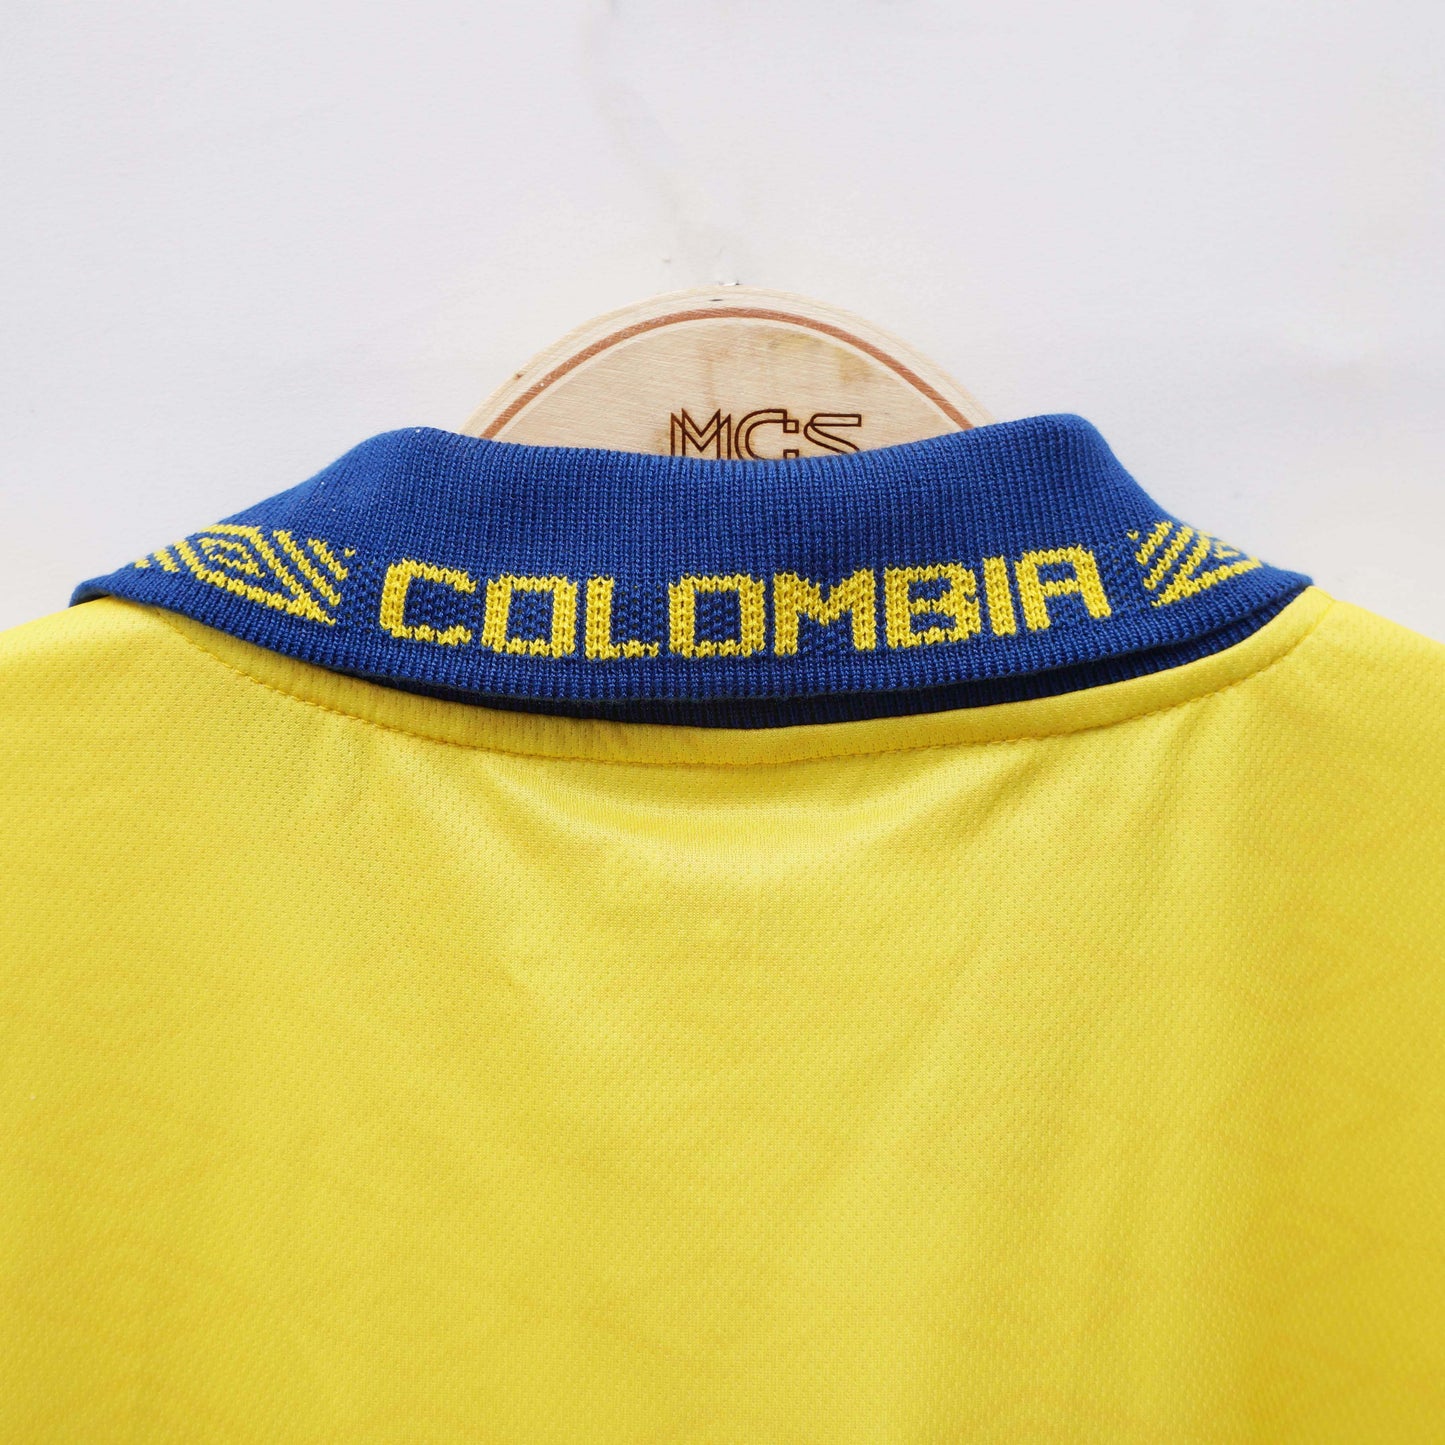 Camiseta Colombia 1993 Copa